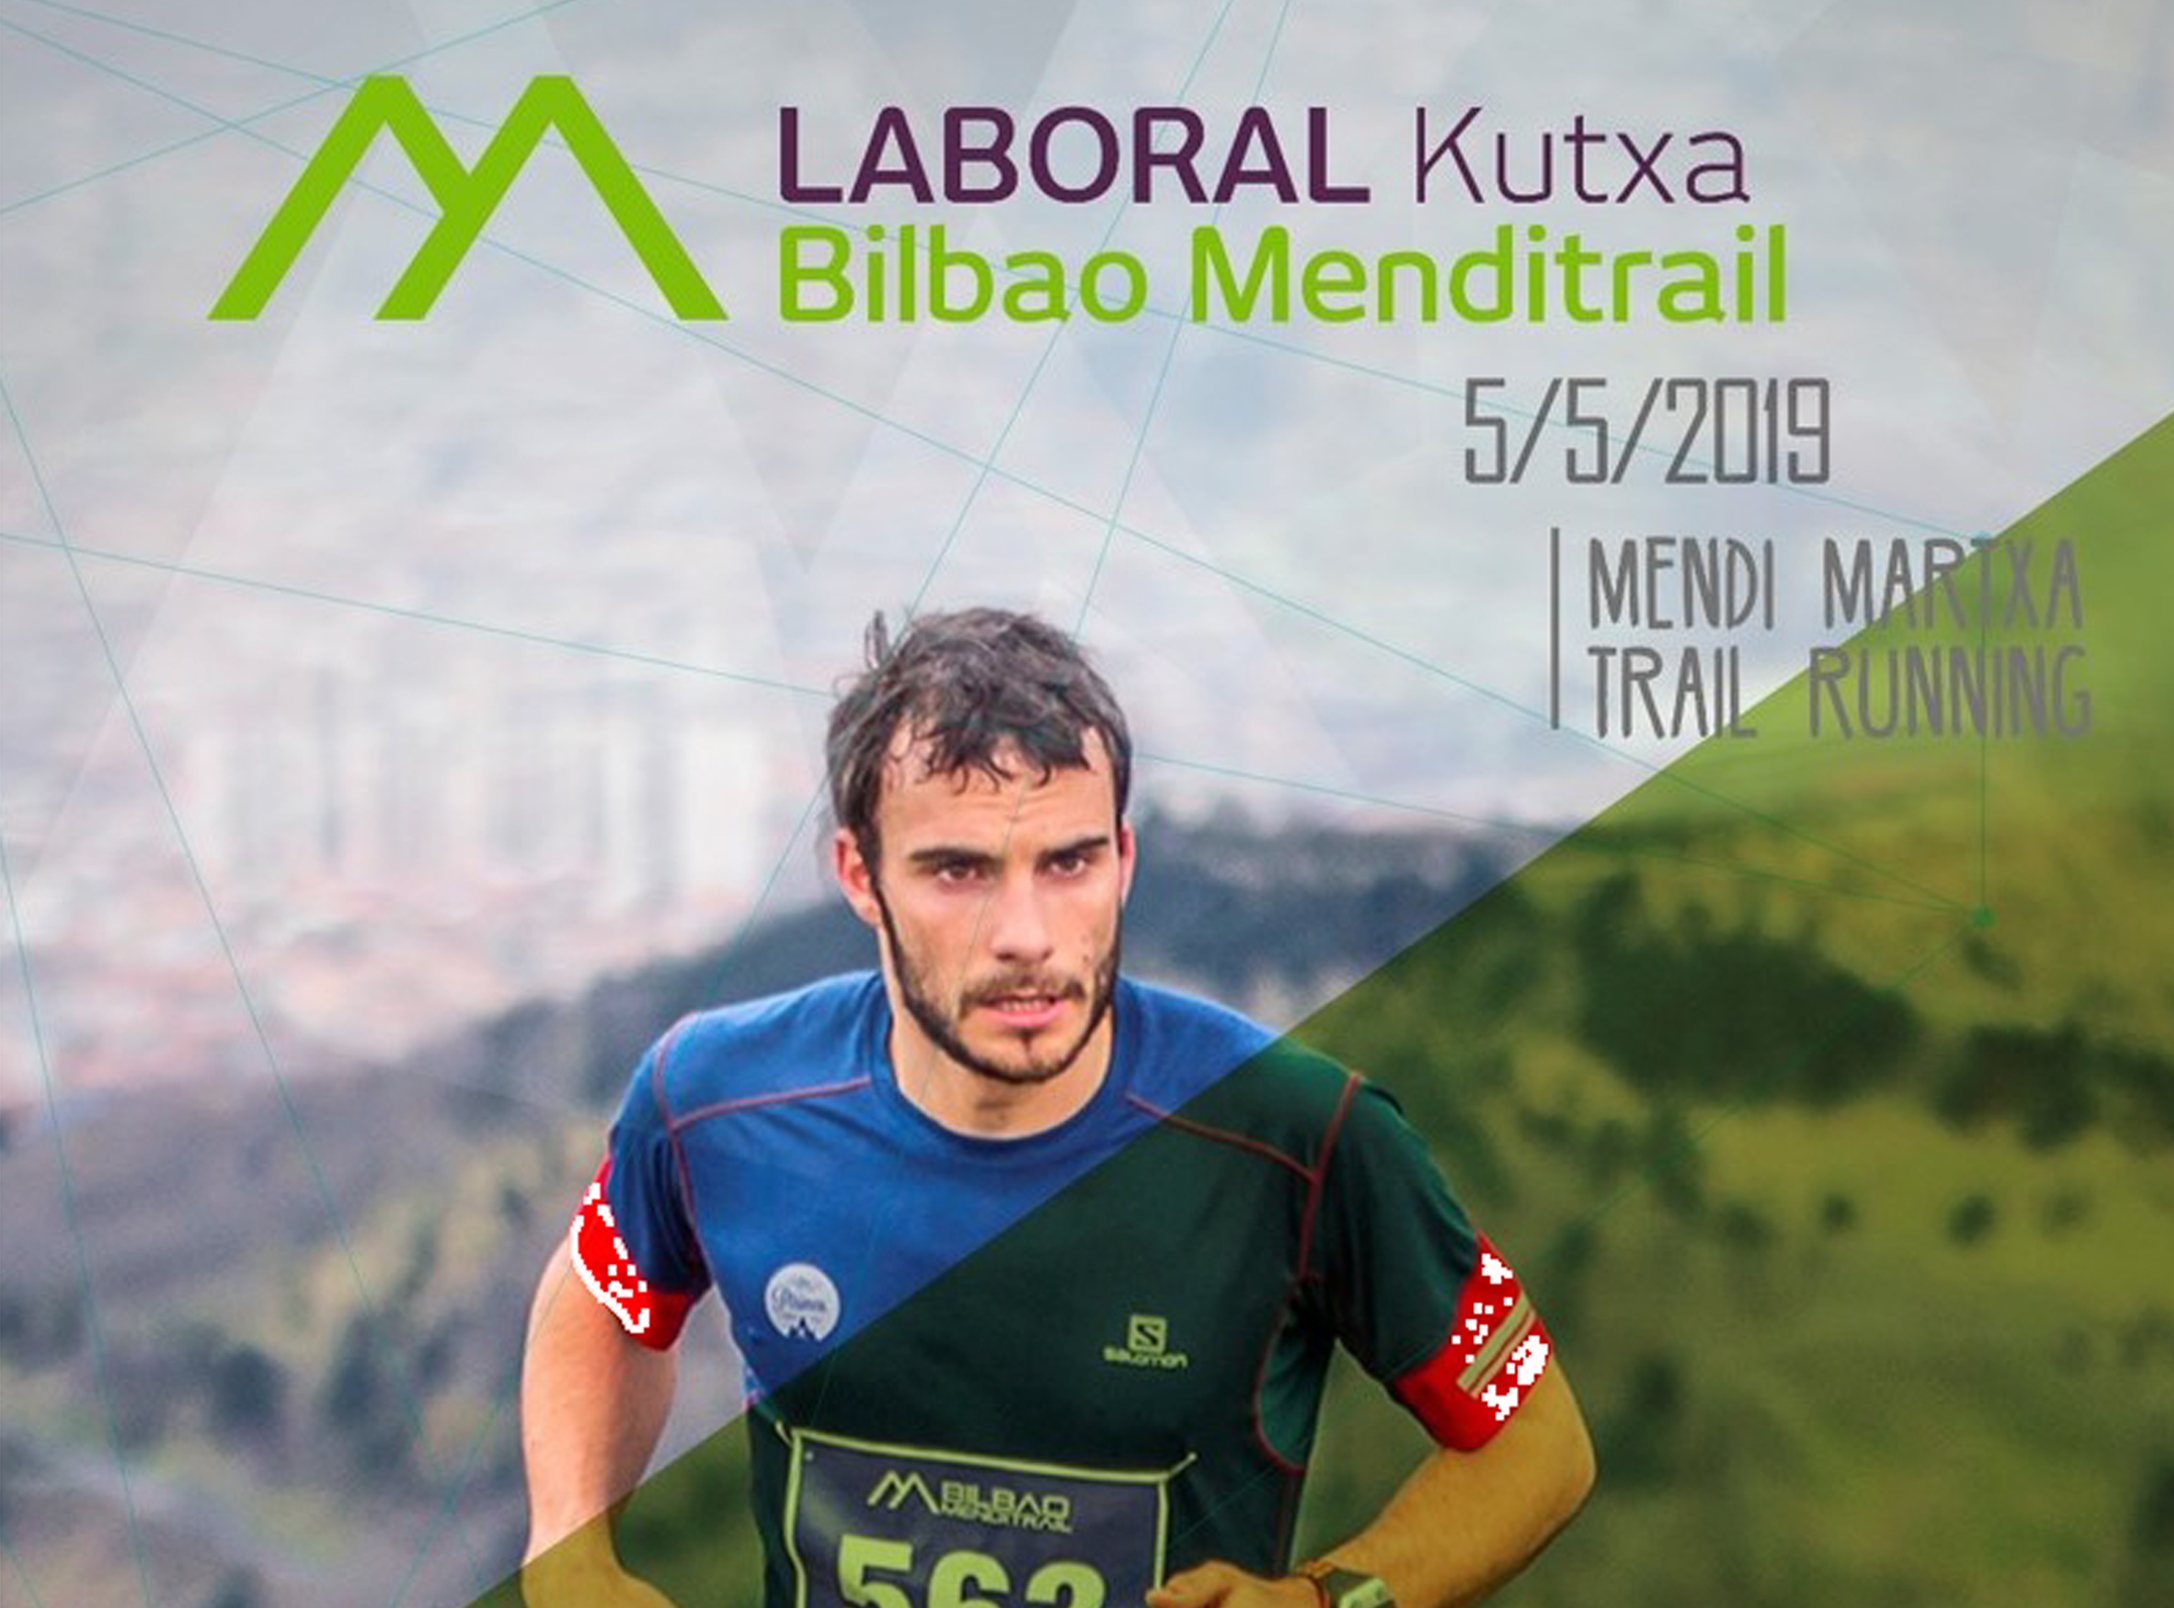 Sorteamos 5 dorsales para la 7ª edición de la LABORAL Kutxa Bilbao Menditrail